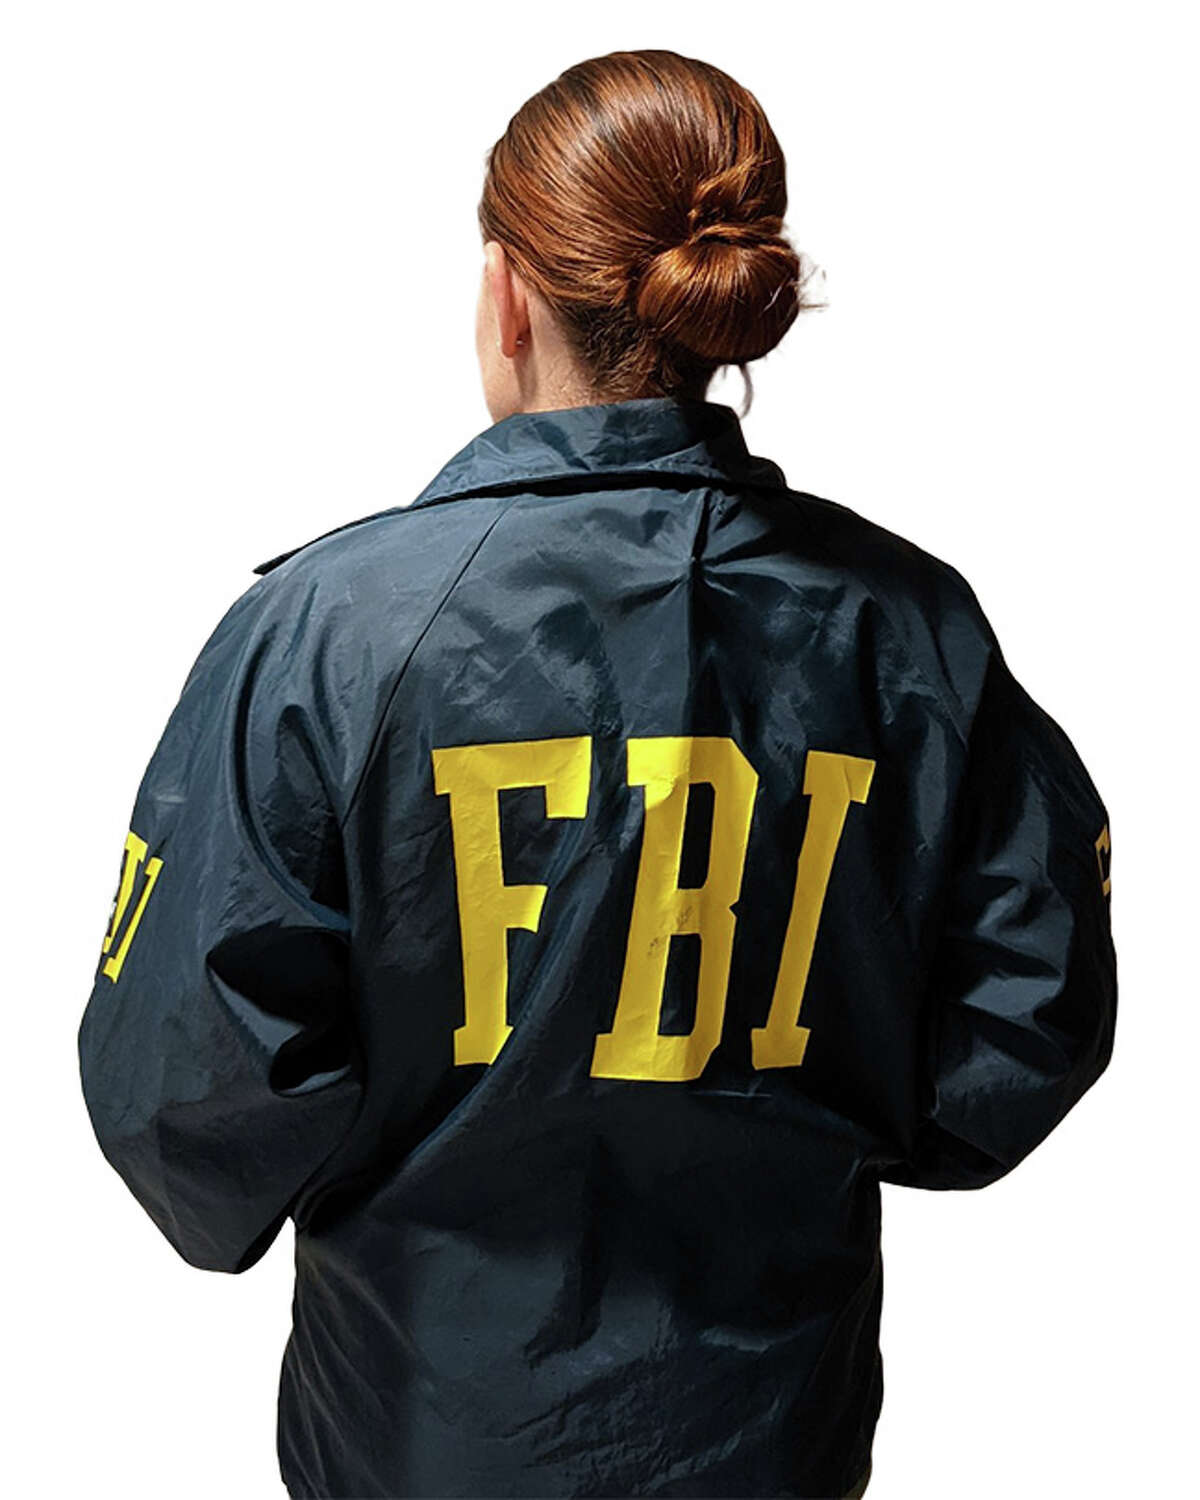 female fbi agent